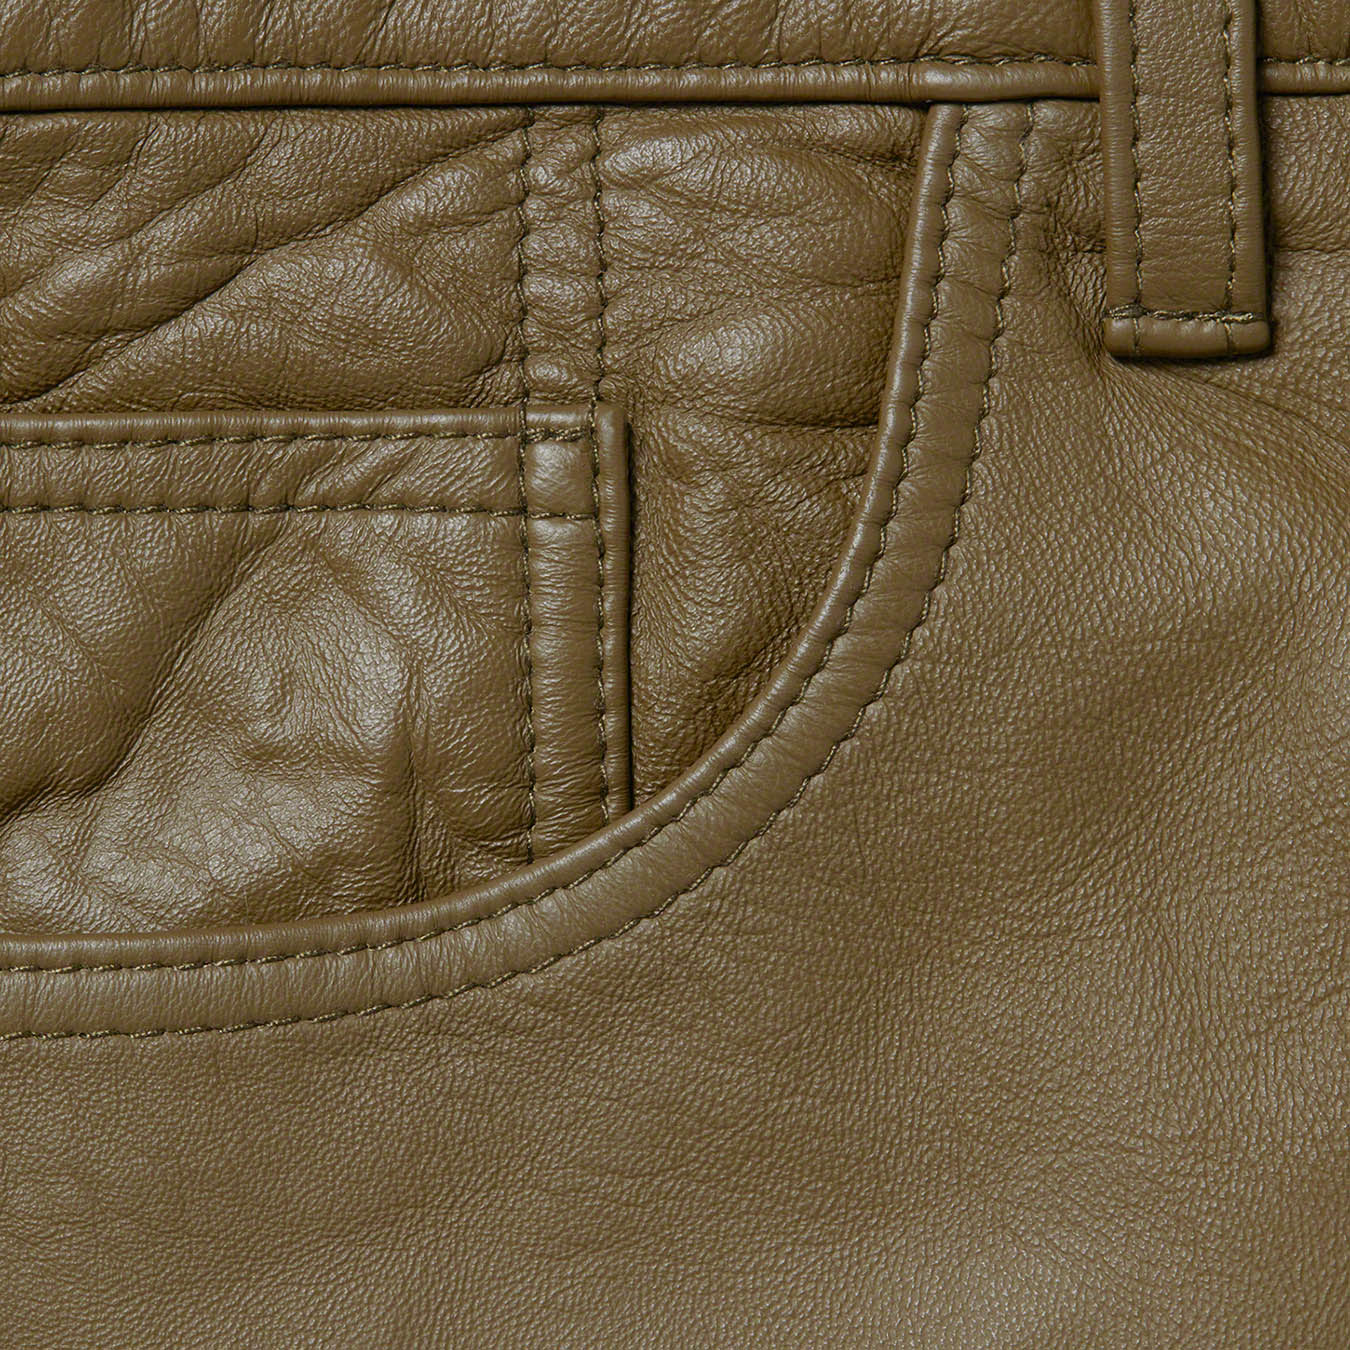 Supreme Leather 5-Pocket Jean